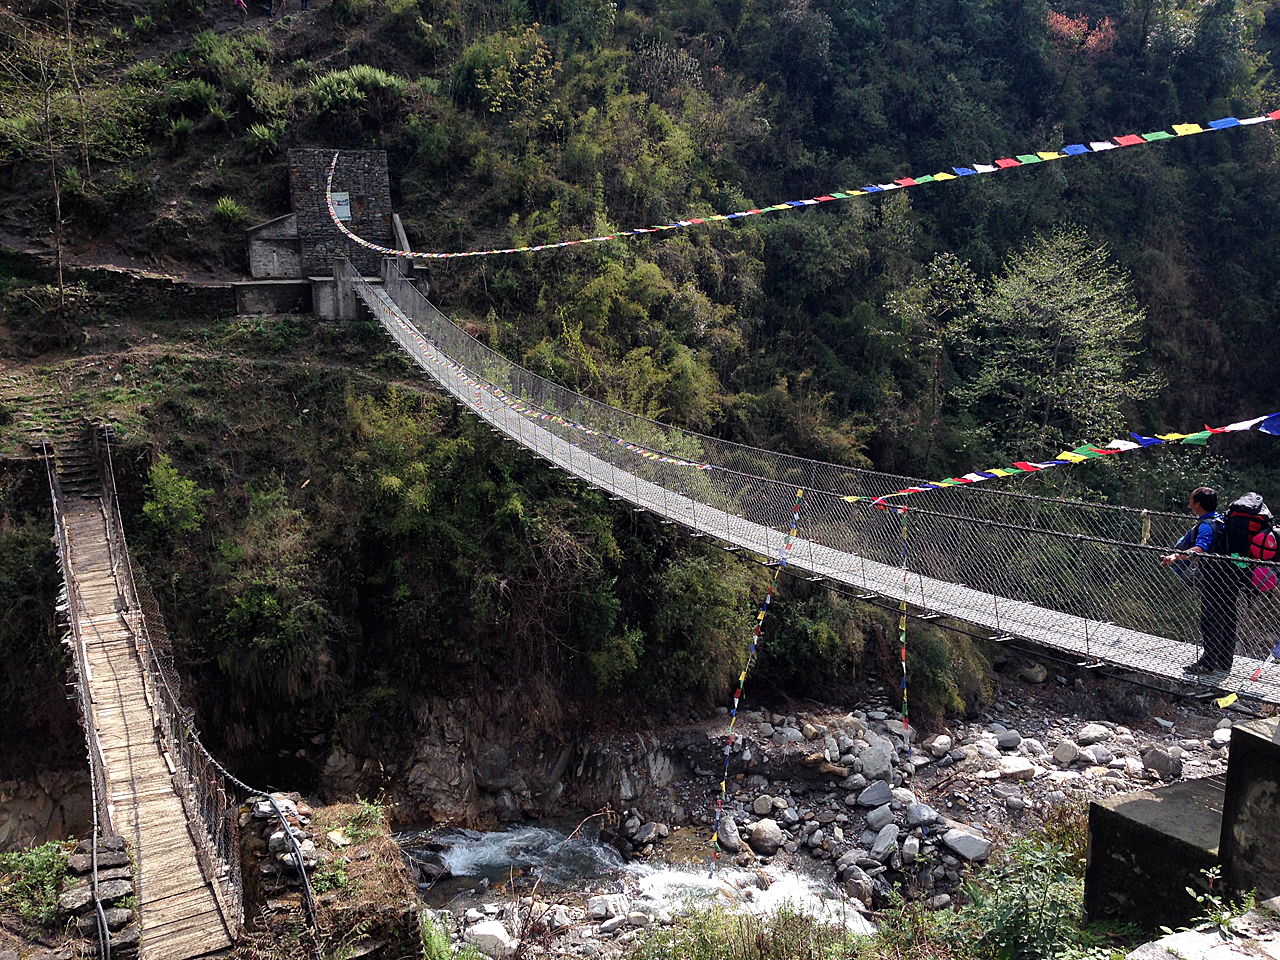 네팔 트레킹 중간 중간에 이런 다리를 건너야 한다. 왼쪽에 있던 게 기존의 다리이고, 오른쪽이 새로 놓인 다리. 오래된 다리 밖에 없을 땐 정말 아찔하다.